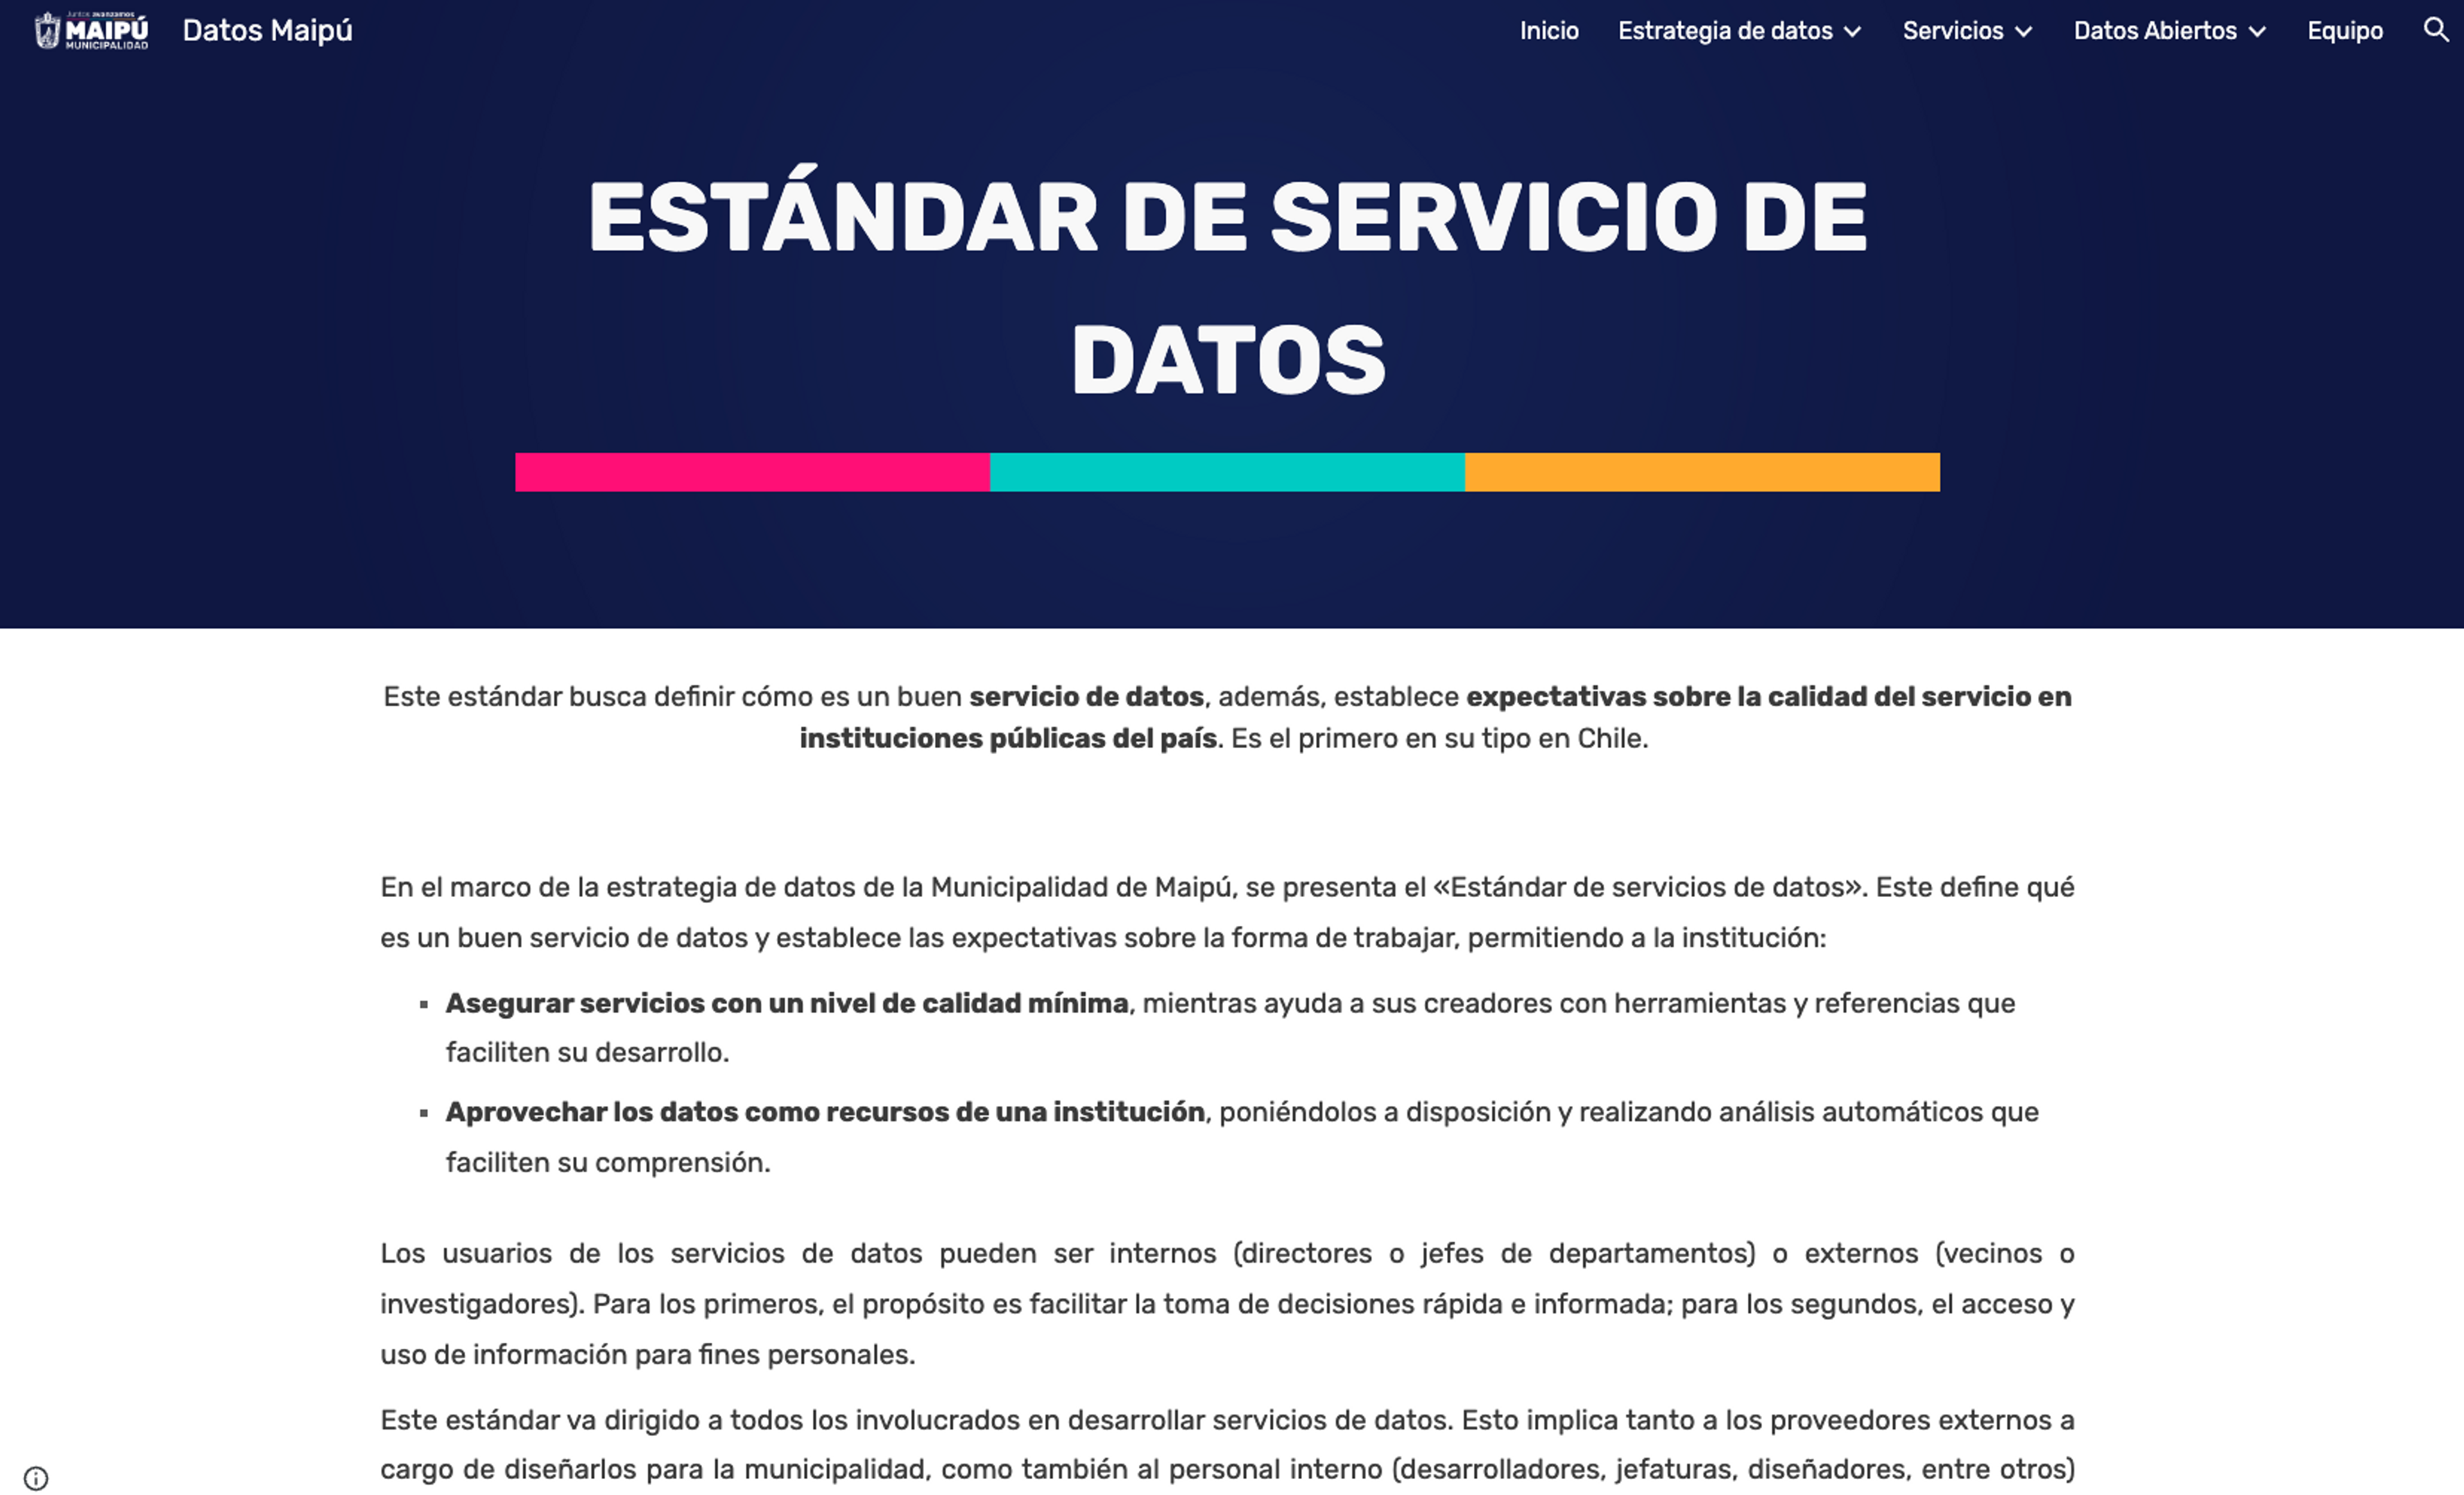 Estándar de Servicios de Datos publicado en el sitio web de la Municipalidad de Maipú, dentro de la plataforma Datos Maipú.